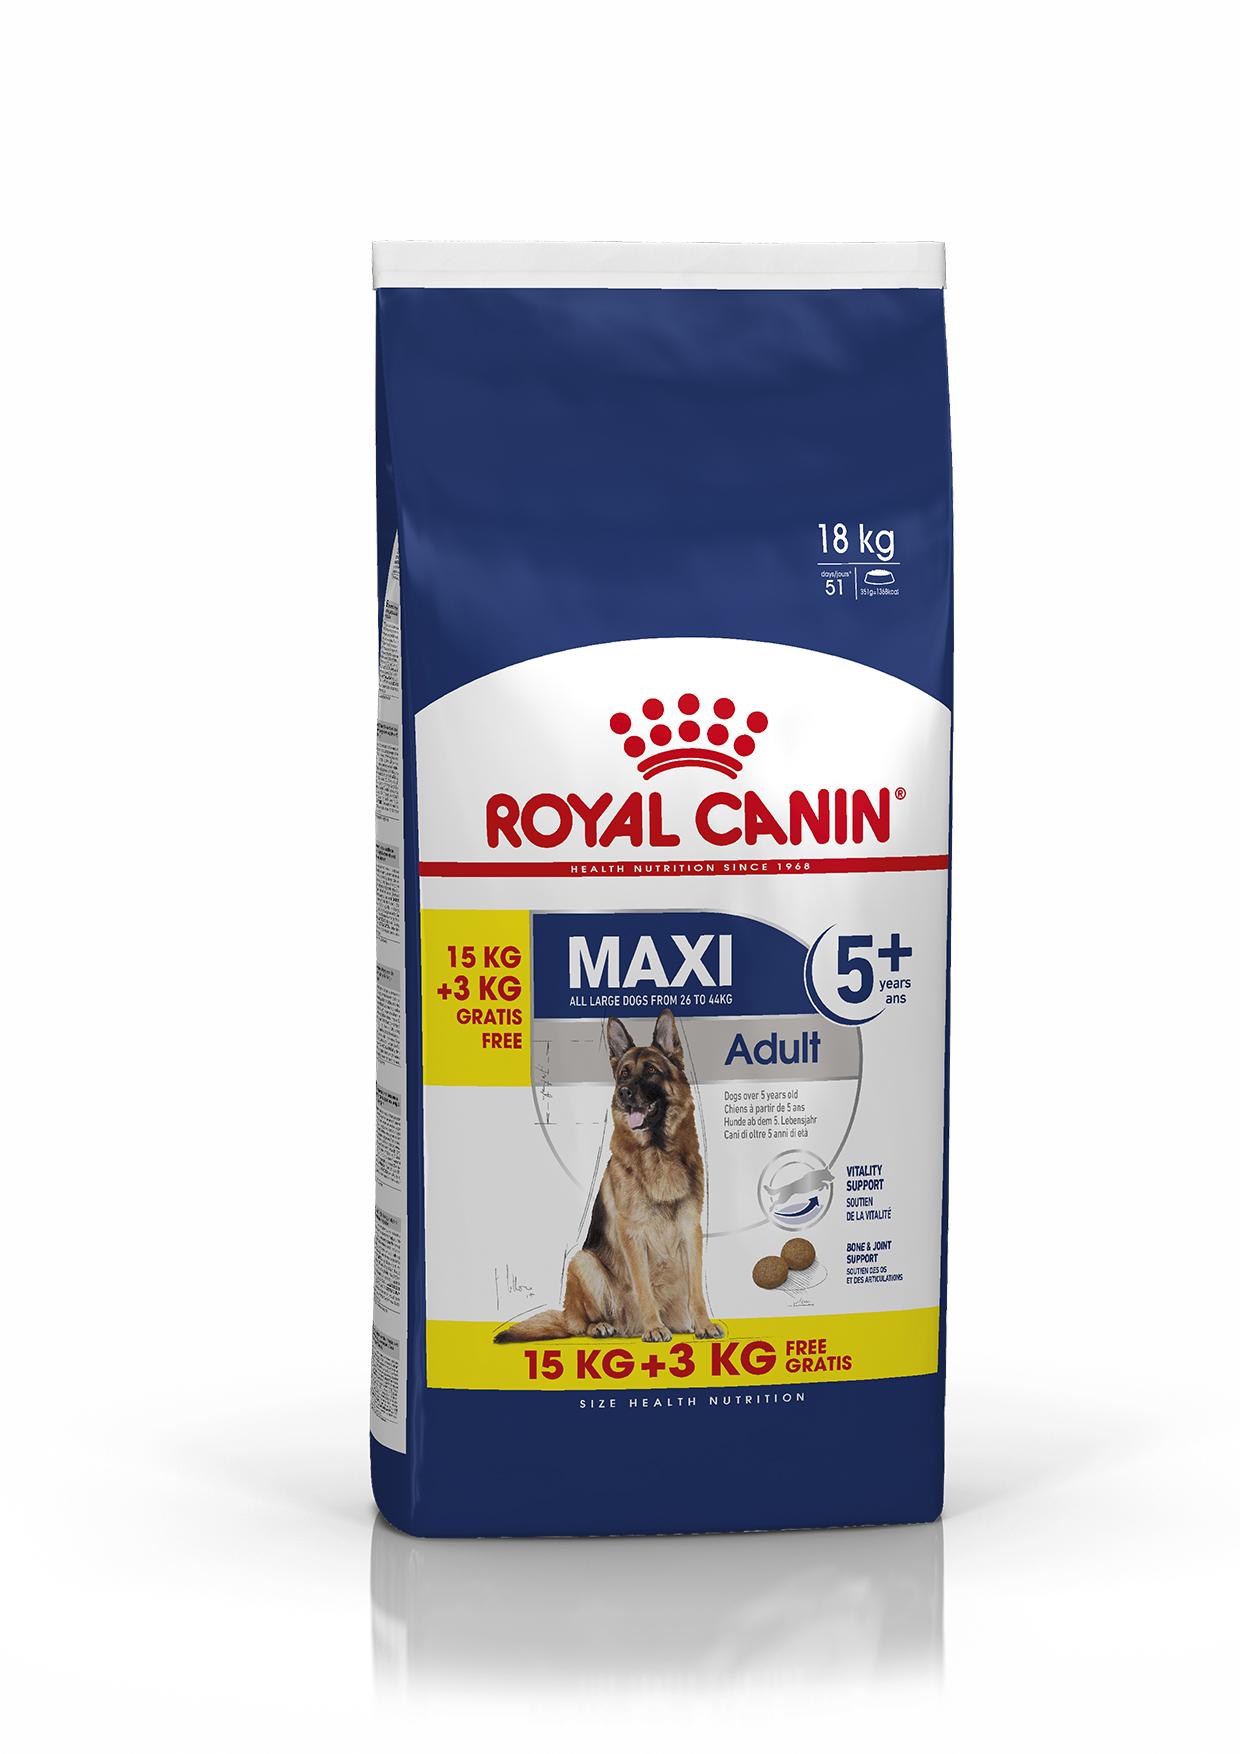 Afbeelding Royal Canin Maxi Adult 5+ hondenvoer 15 + 3 kg gratis door Brekz.nl